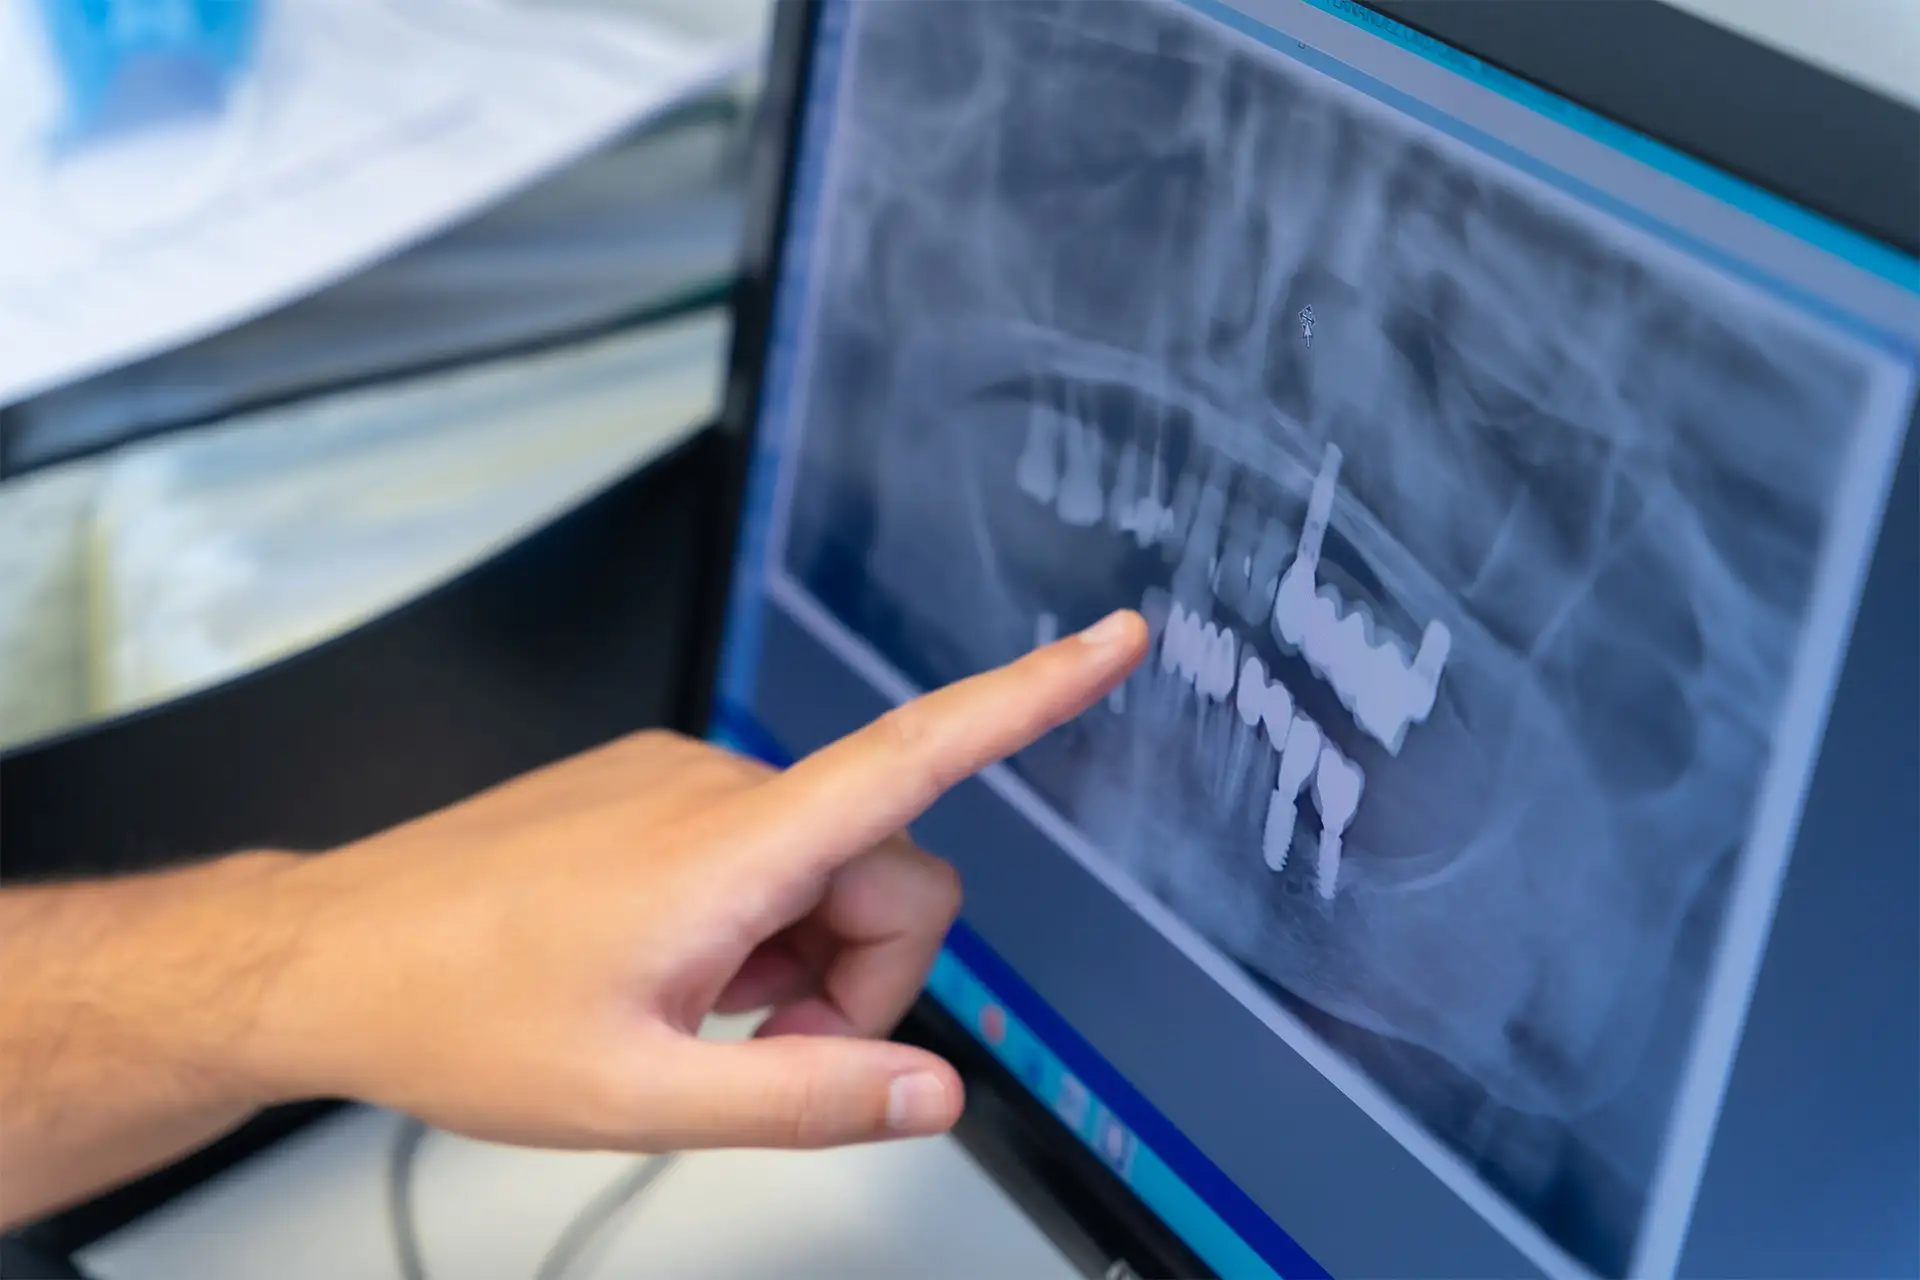 Radiografia su monitor che mostra i risultati di implantologia dentale effettuata nello studio odontoiatrico Maurizio Giussani a Milano